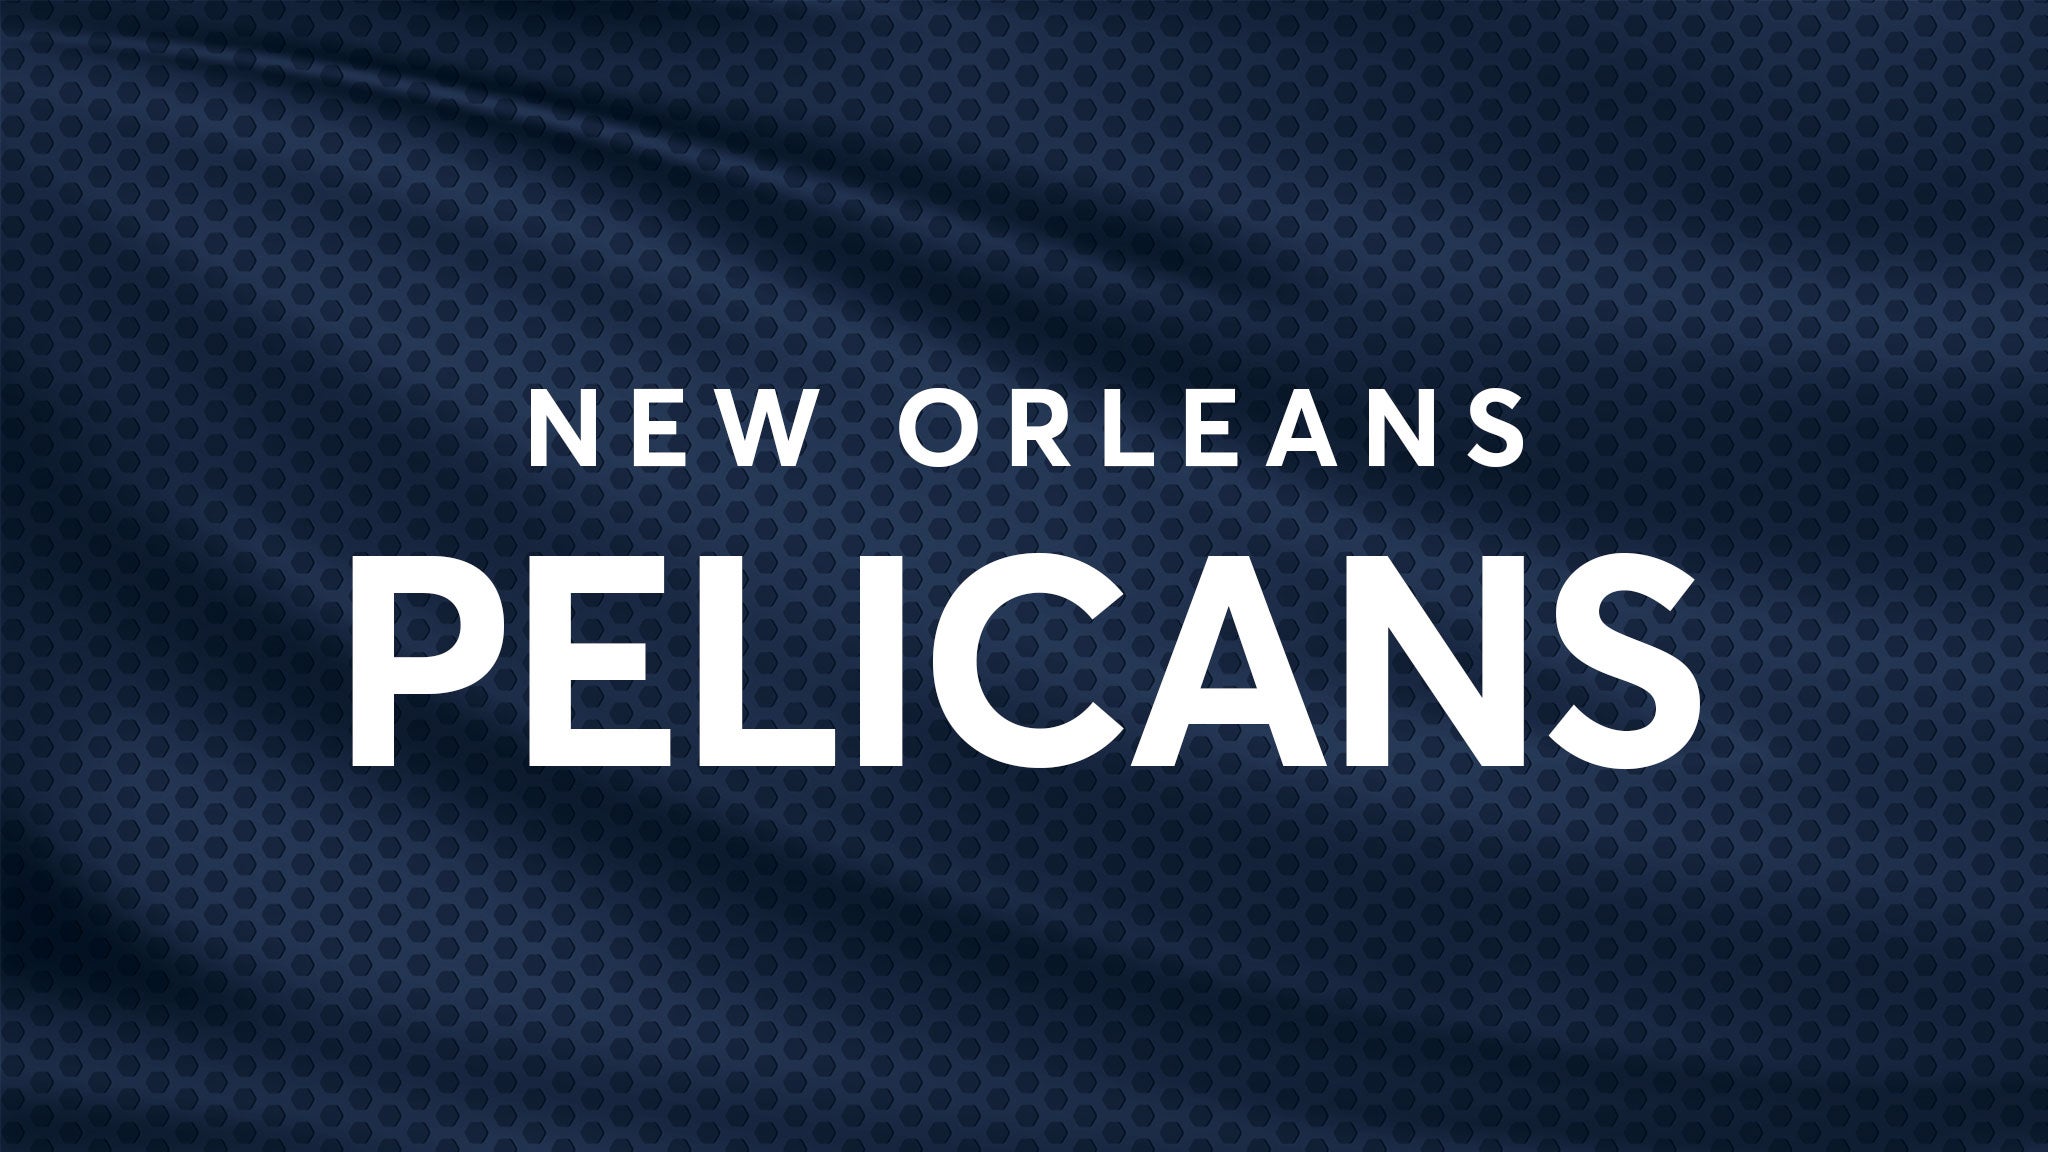 New Orleans Pelicans vs. San Antonio Spurs